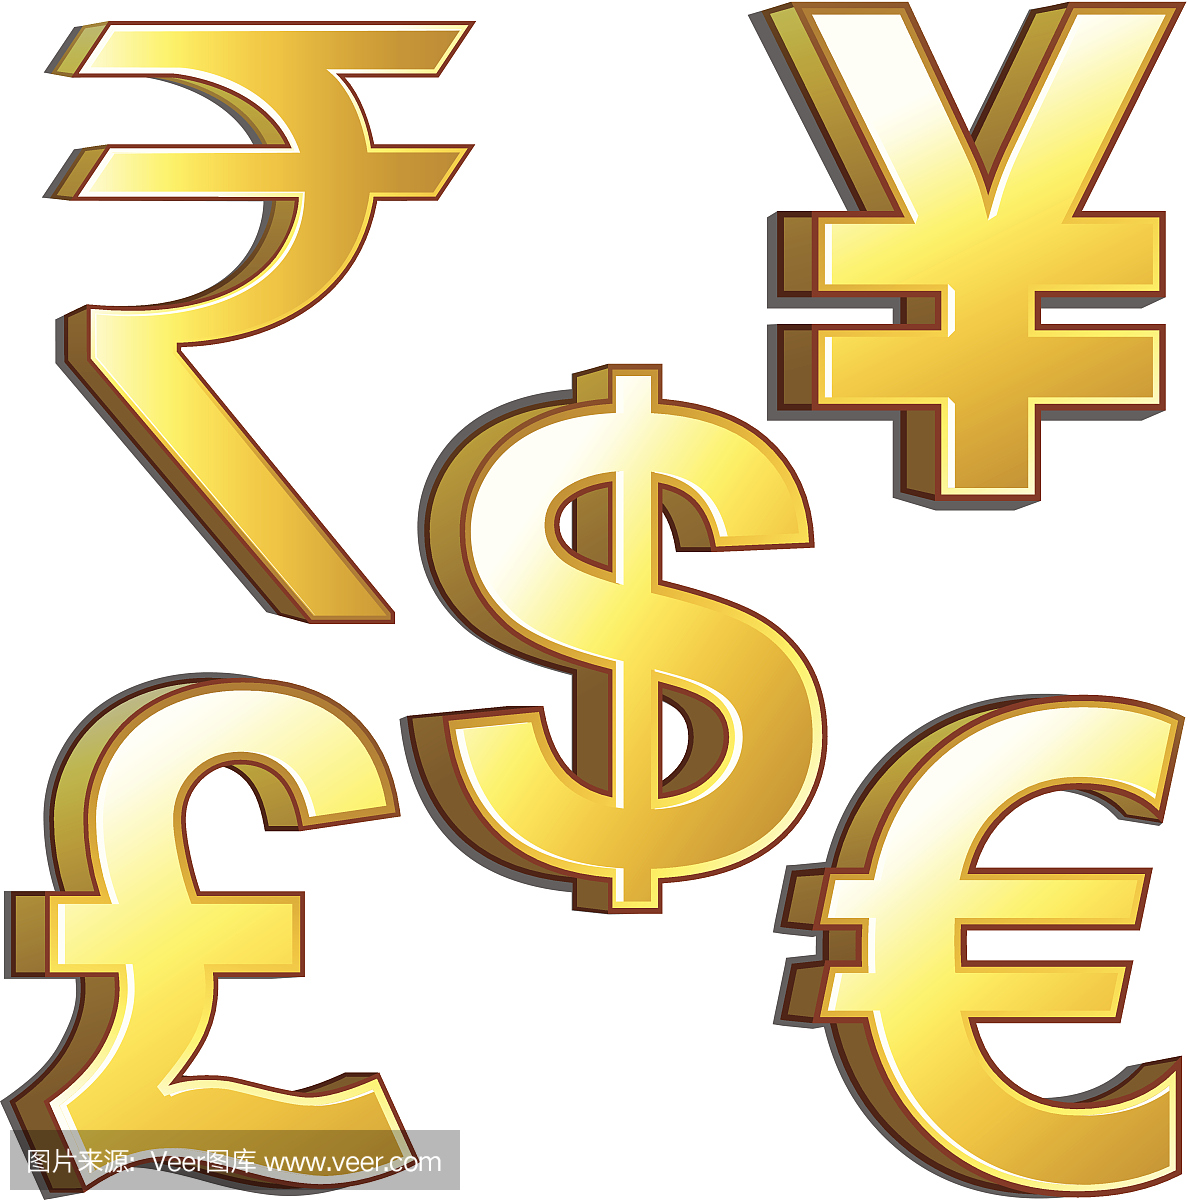 印度货币,印度钞票,印度货币单位,印度卢比